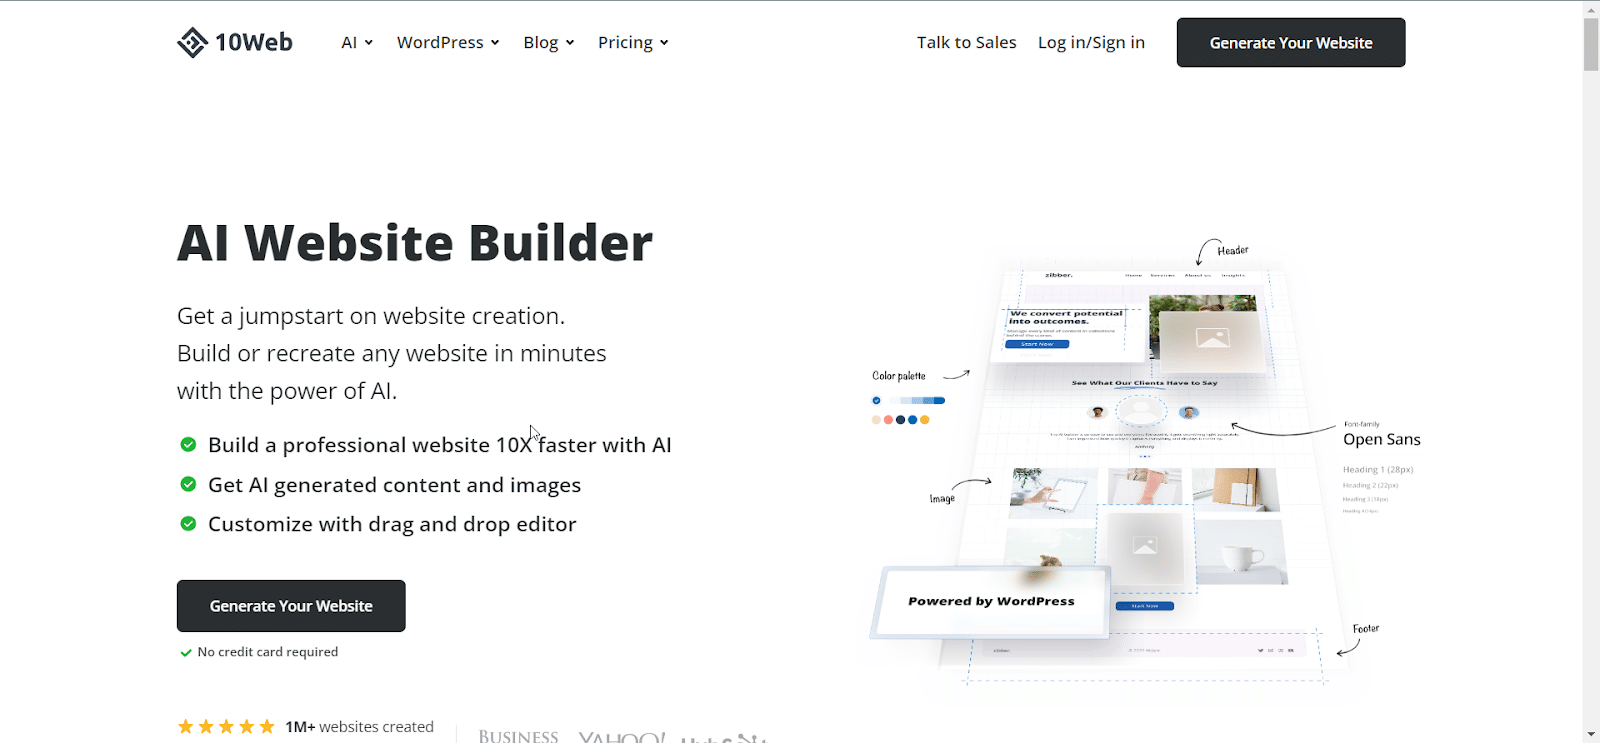 AI Website Builders